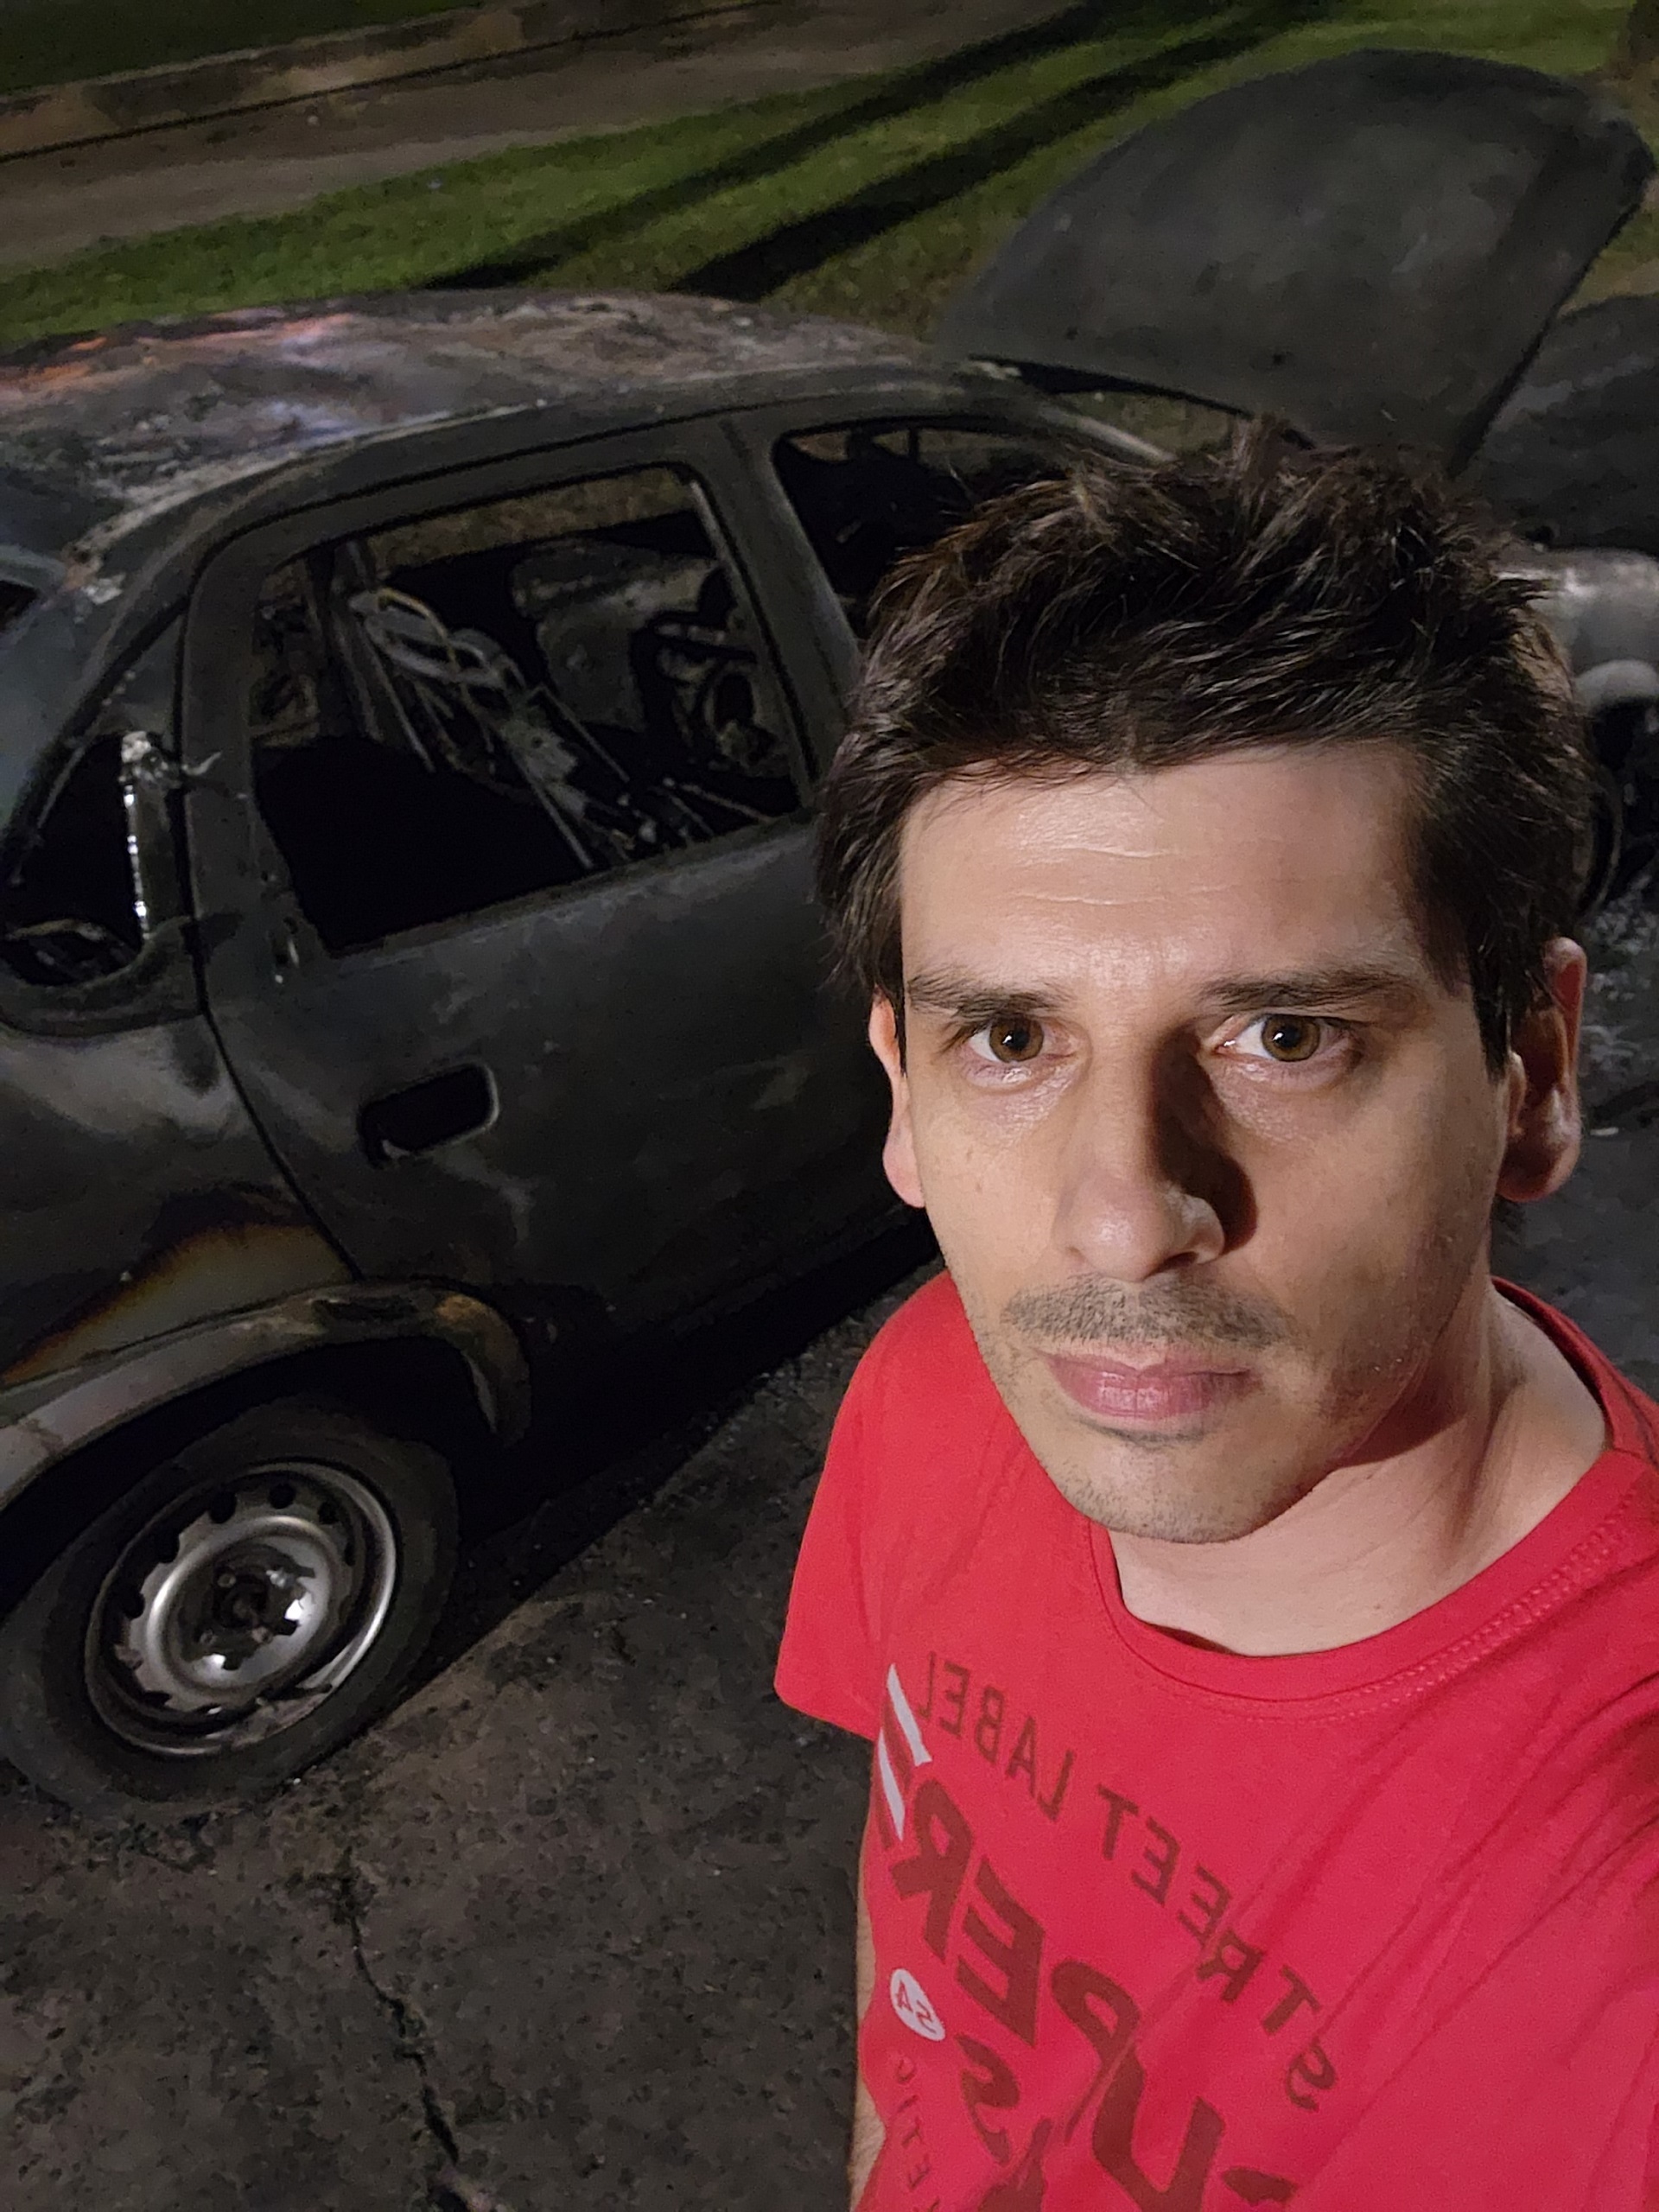 Dos semanas después de haber publicado "Los quemacoches" apareció frente a su departamento un auto quemado